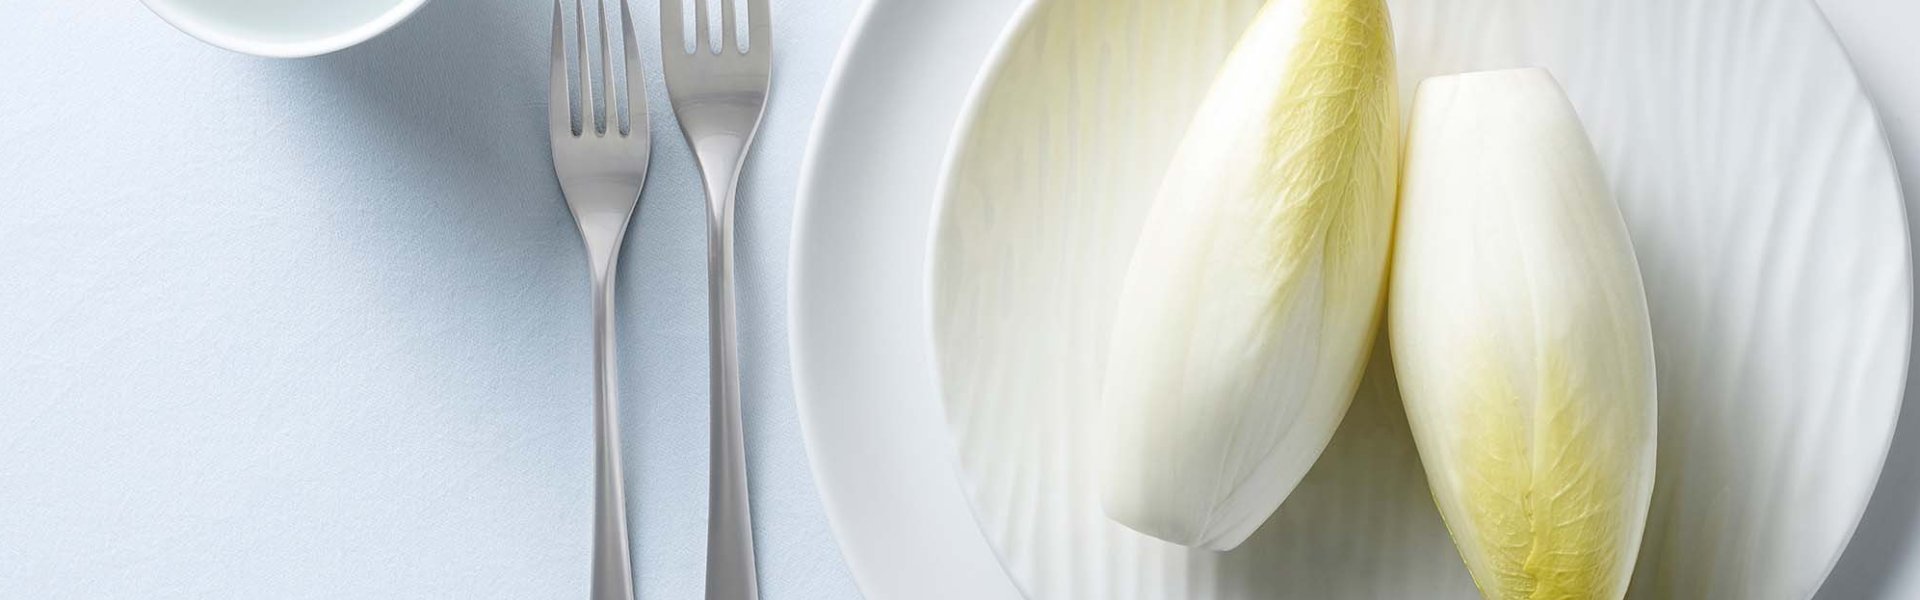 2 stronken witloof liggen op een bord. Vork en glas staan naast het bord, op tafel ligt ook een wit tafelkleed.